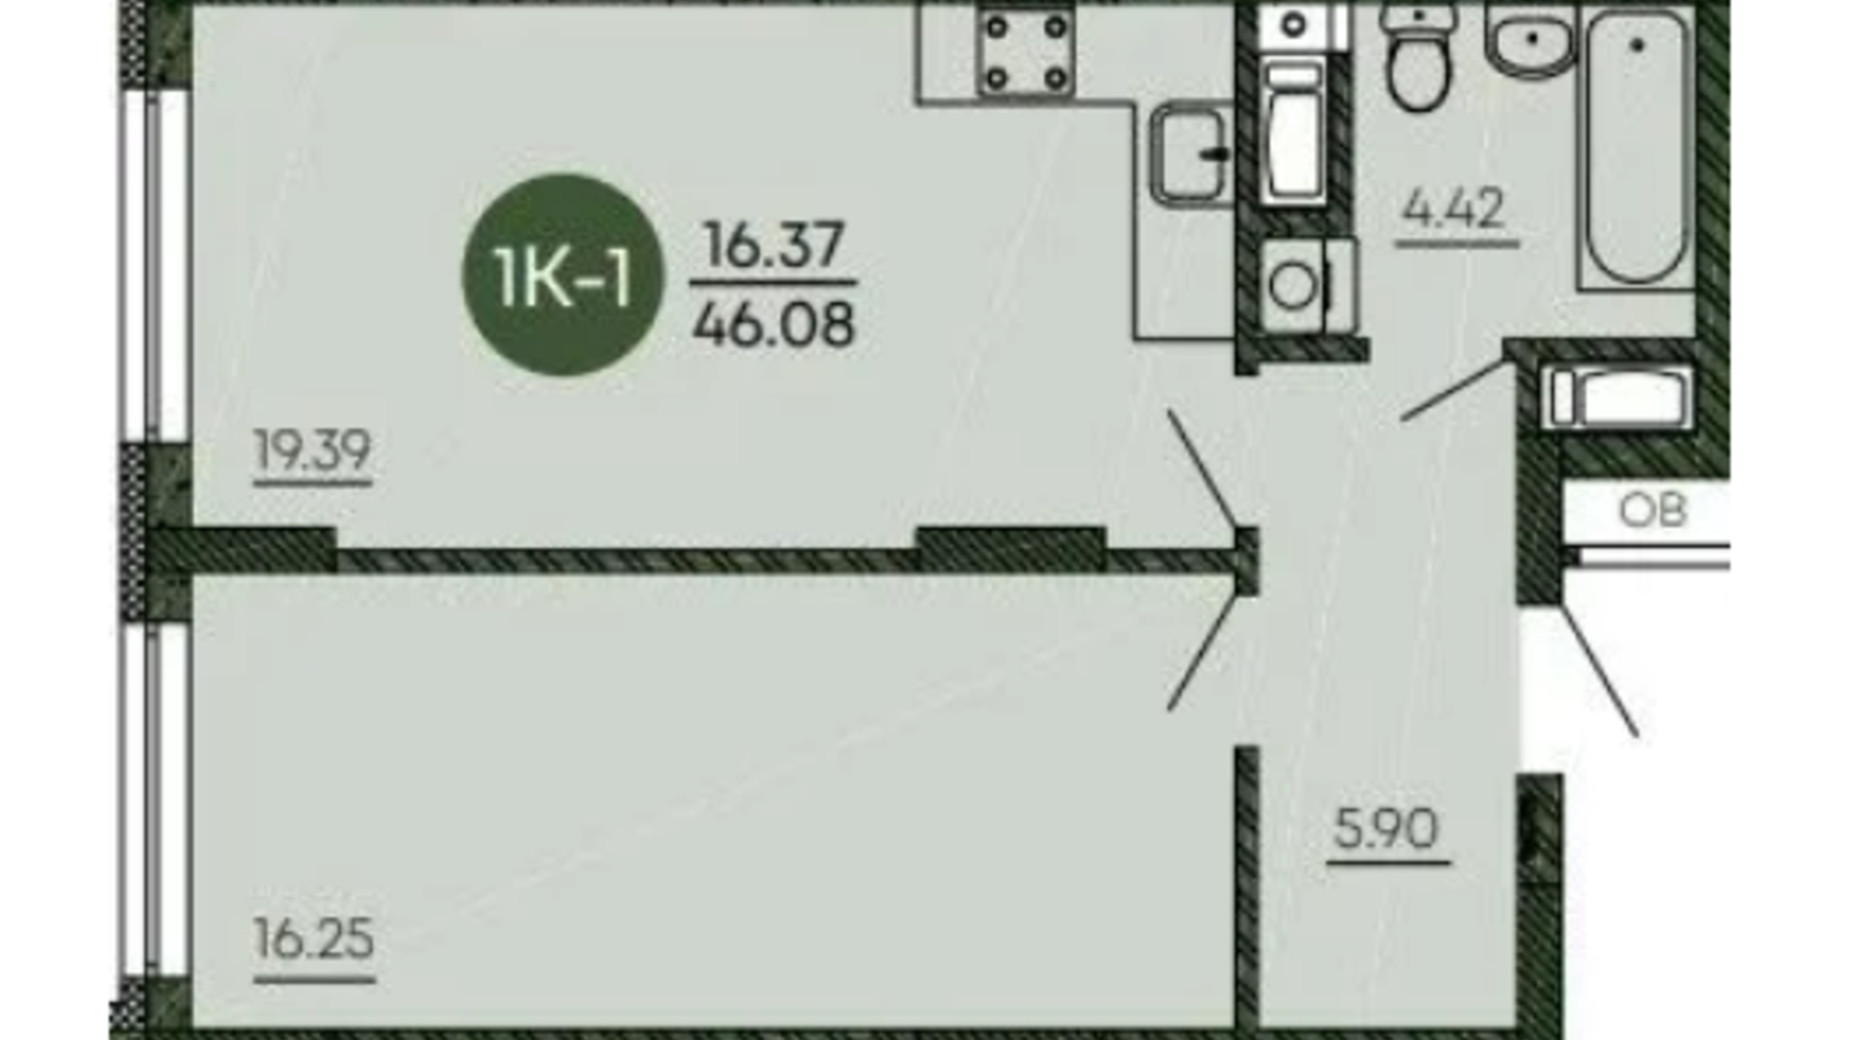 Планування 1-кімнатної квартири в ЖК Оранжерея 46.08 м², фото 586474